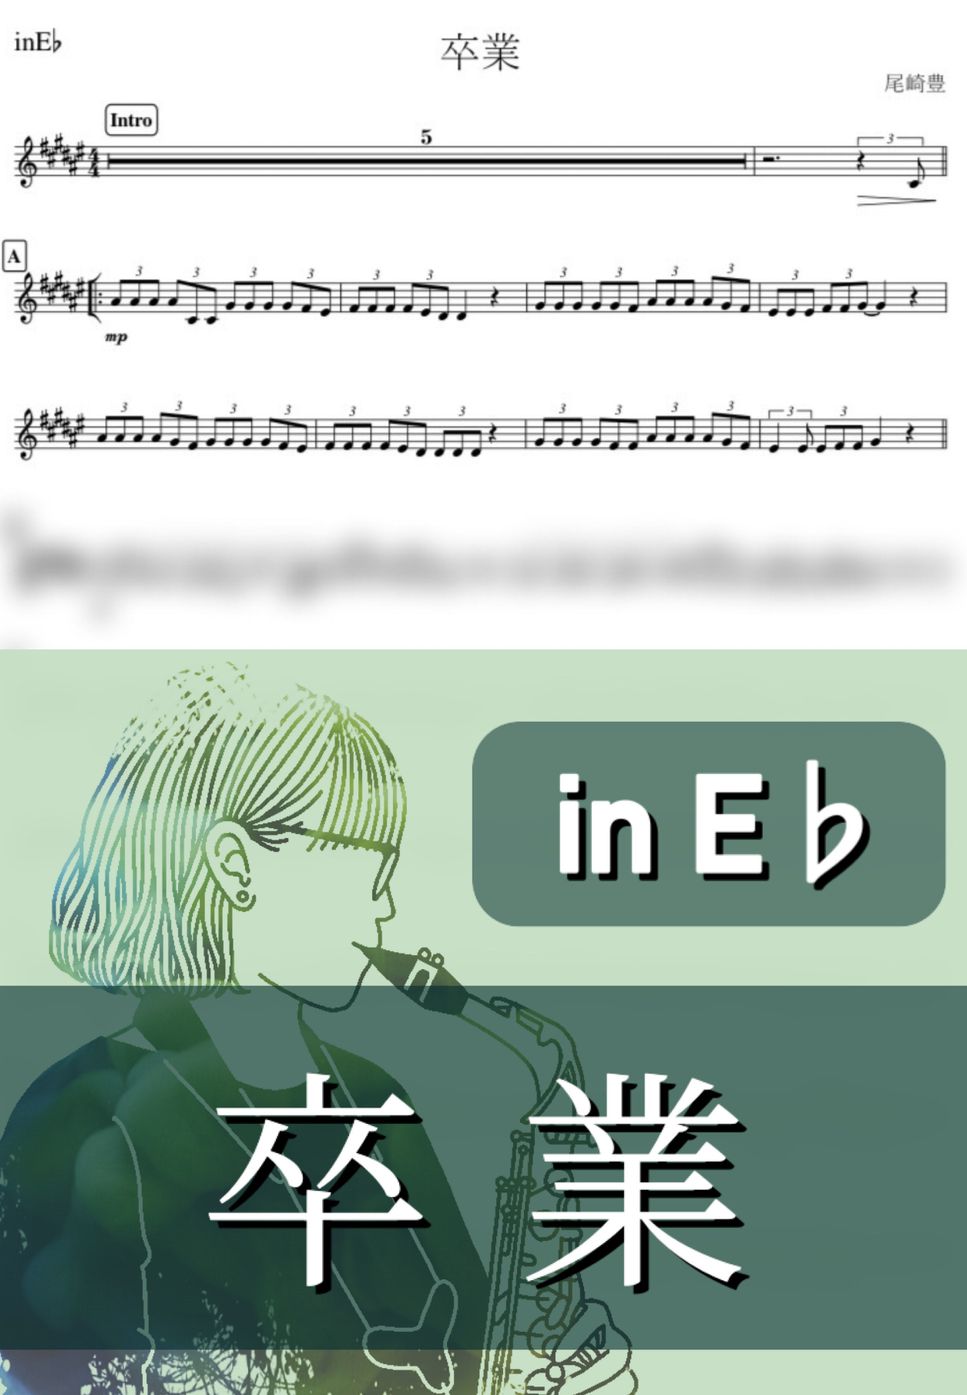 尾崎豊 - 卒業 (E♭) by kanamusic